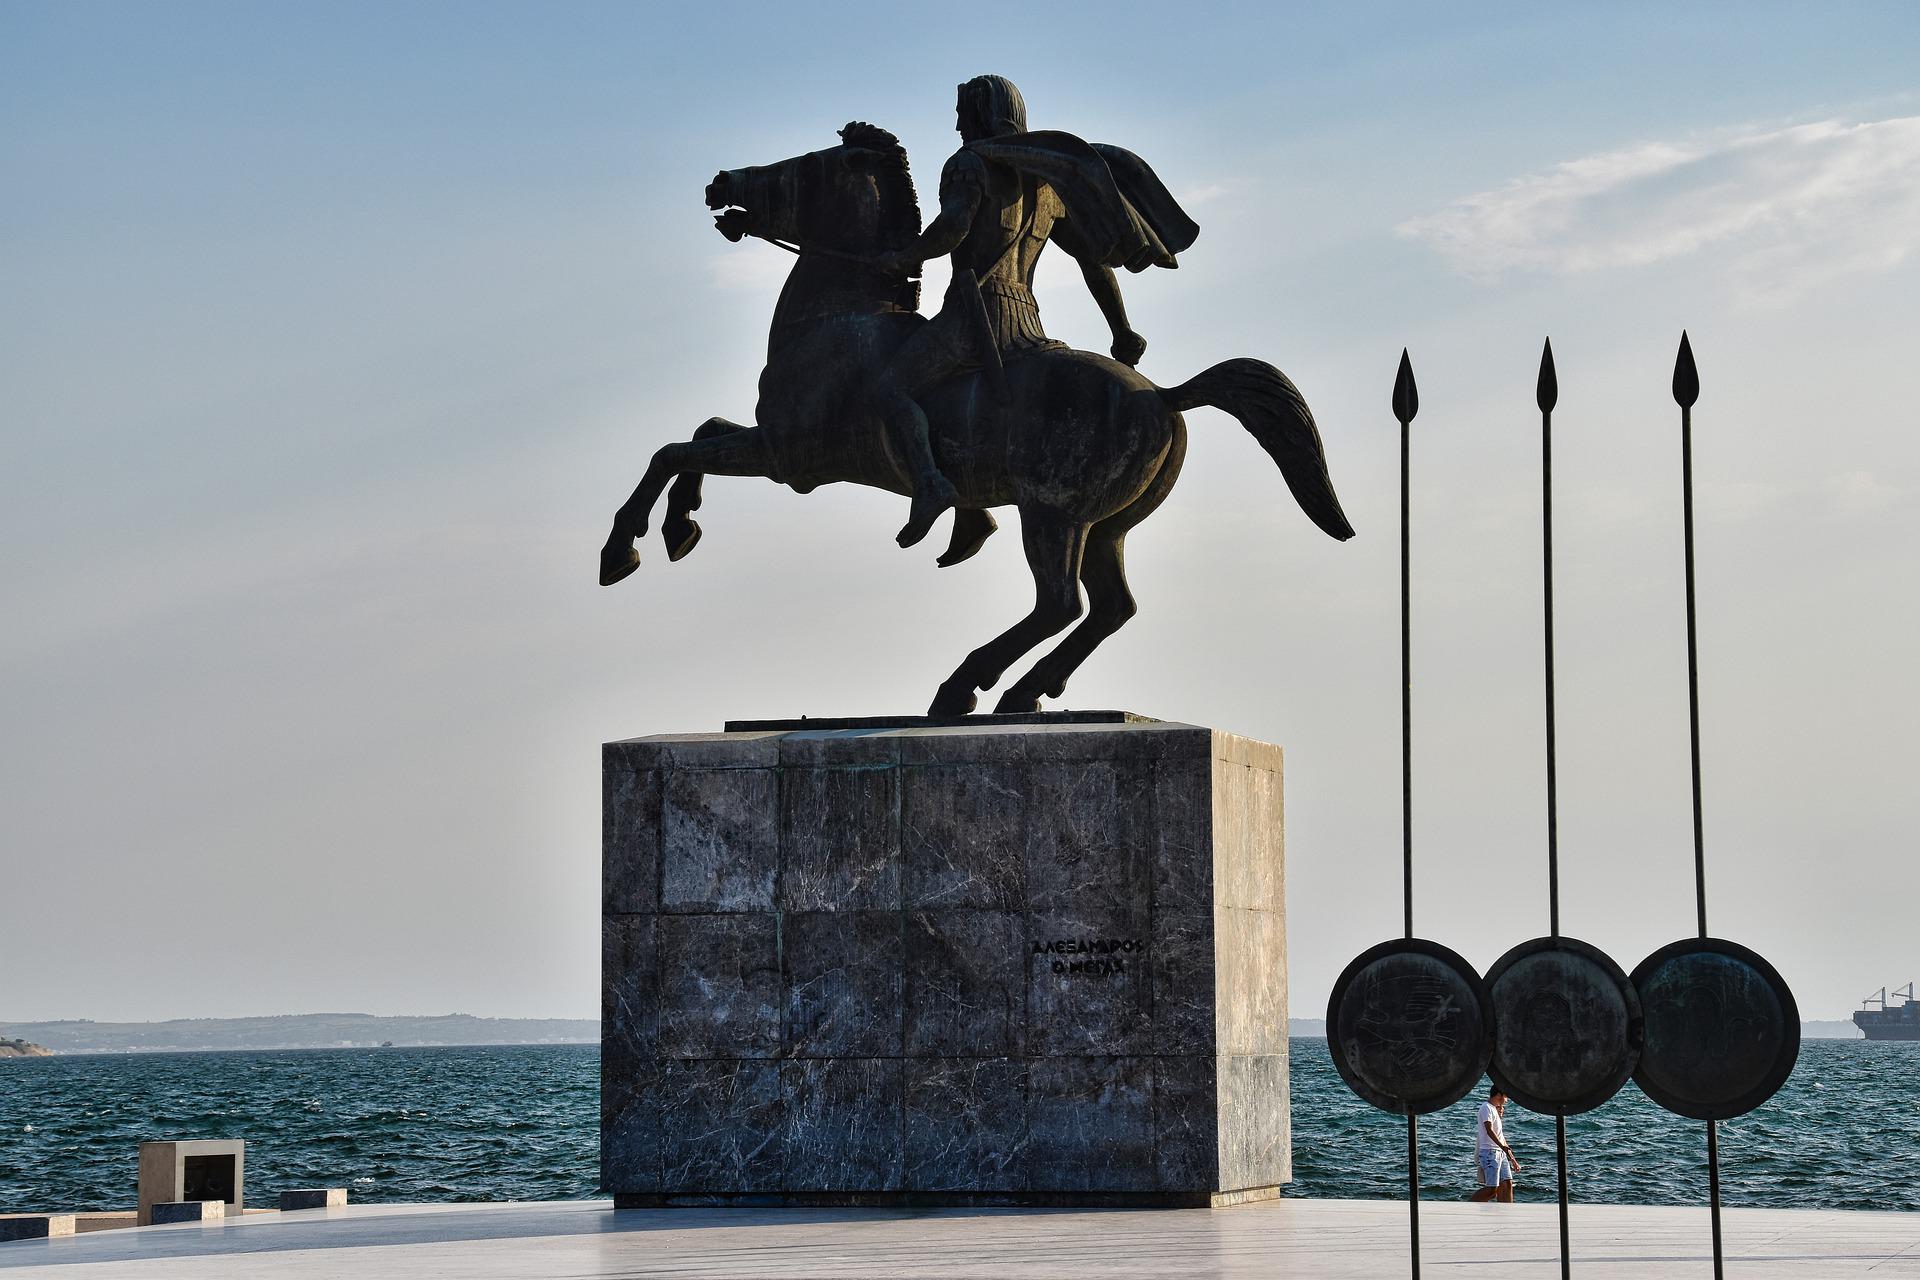 Bronzestatue Alexander des Großen auf Steinsockel, daneben Lanzen und drei Schilde, im Hintergrund das Meer, eine Person geht nach rechts